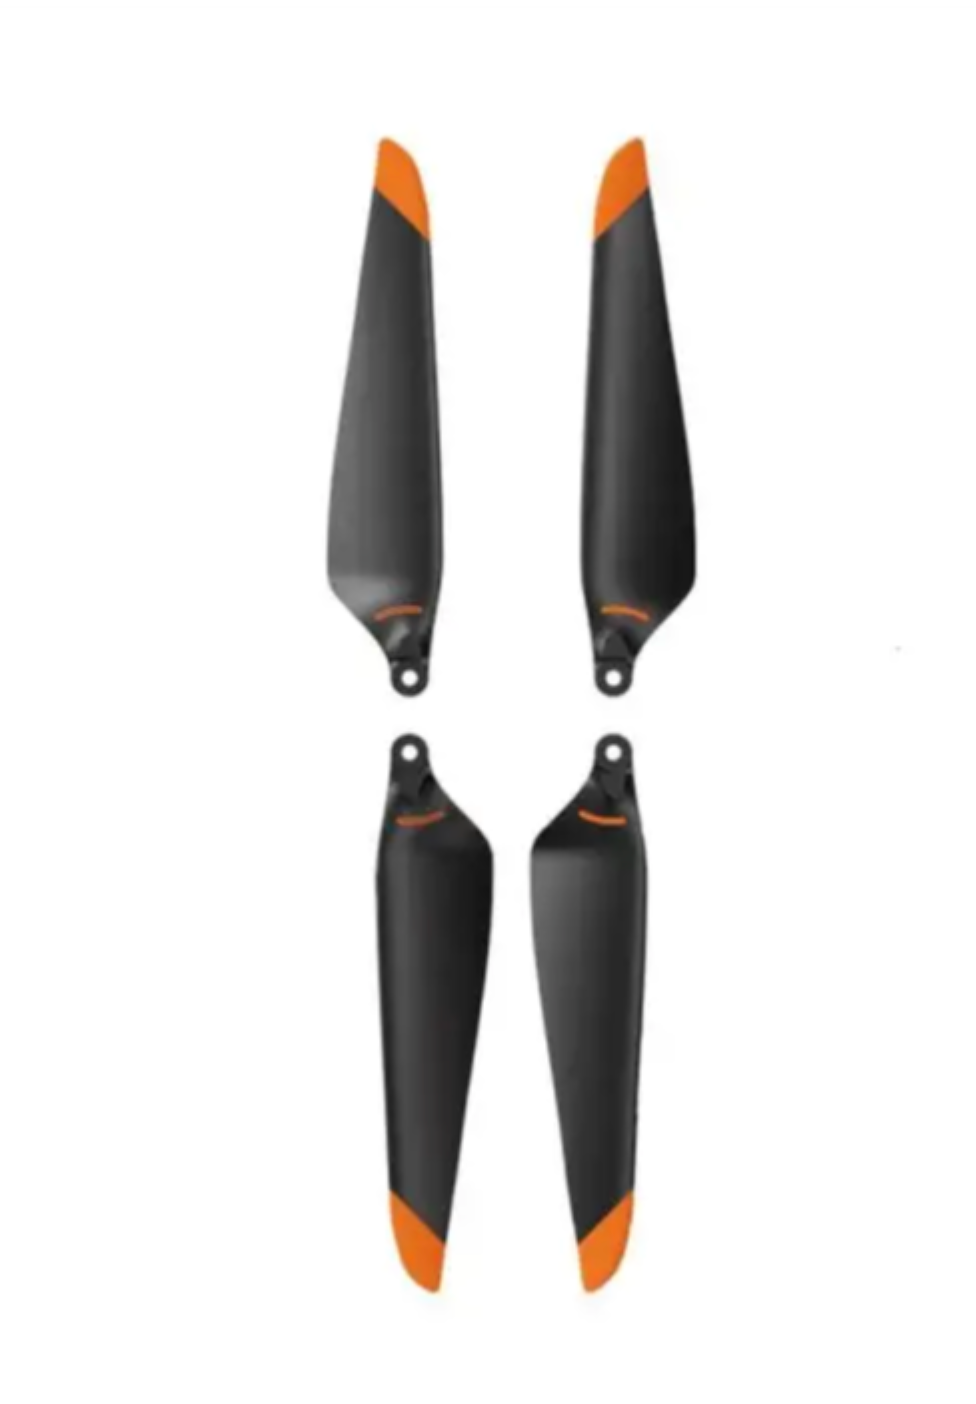 DJI Matrice 3D Propellers (Pair)